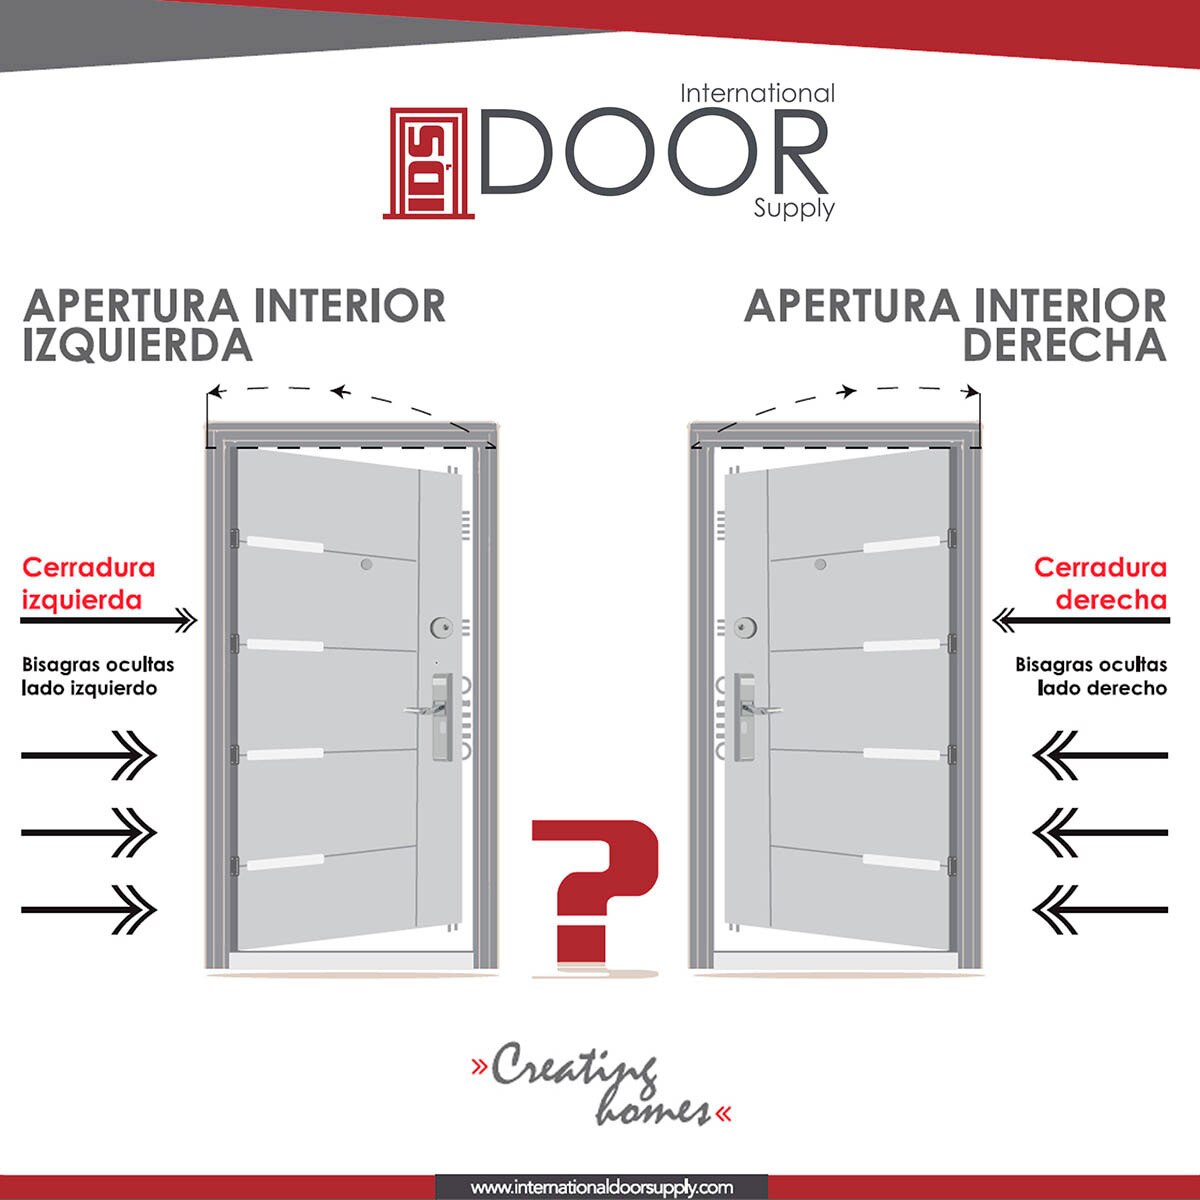 International Door Supply, Puerta de Alta Seguridad Santa Fe con Fijo Izquierda